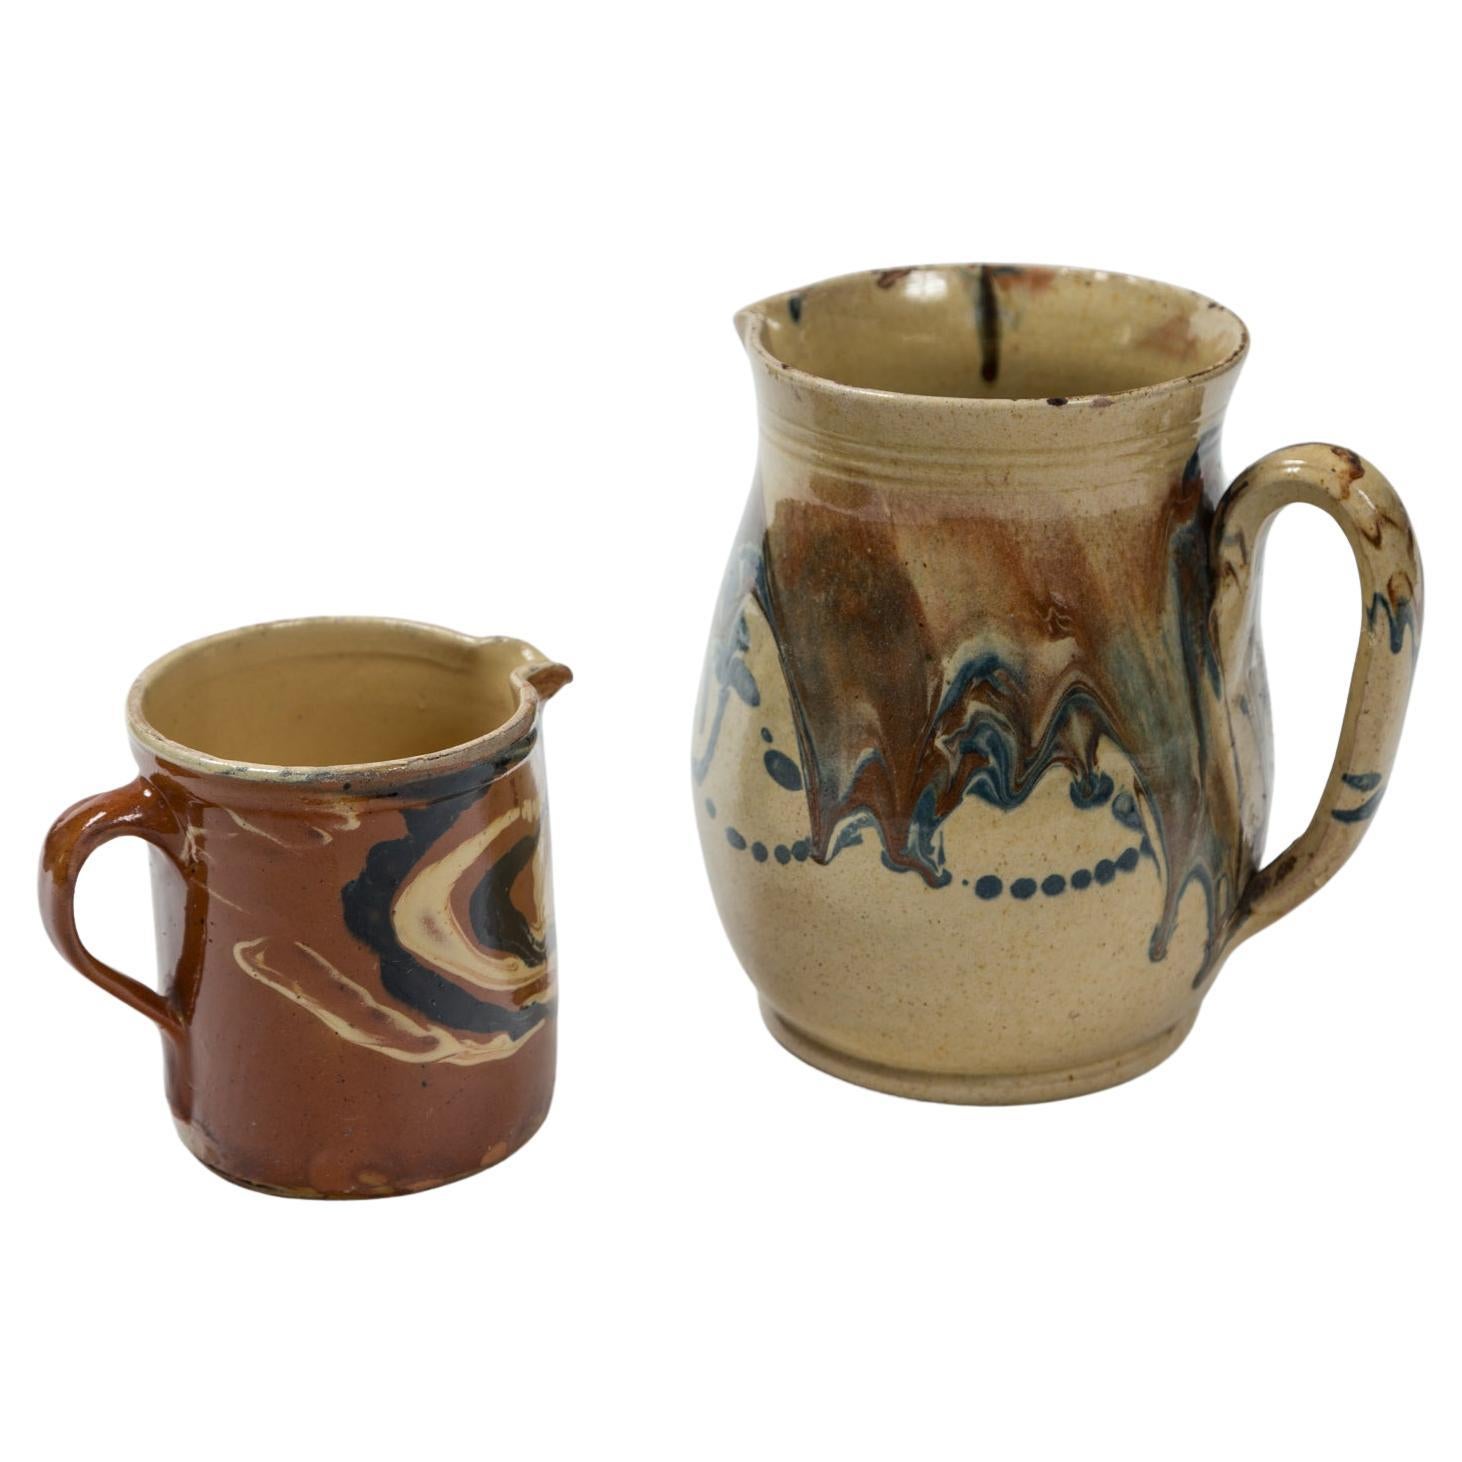 Deux pichets anciens en poterie de Jaspé, France, fin du XIXe siècle